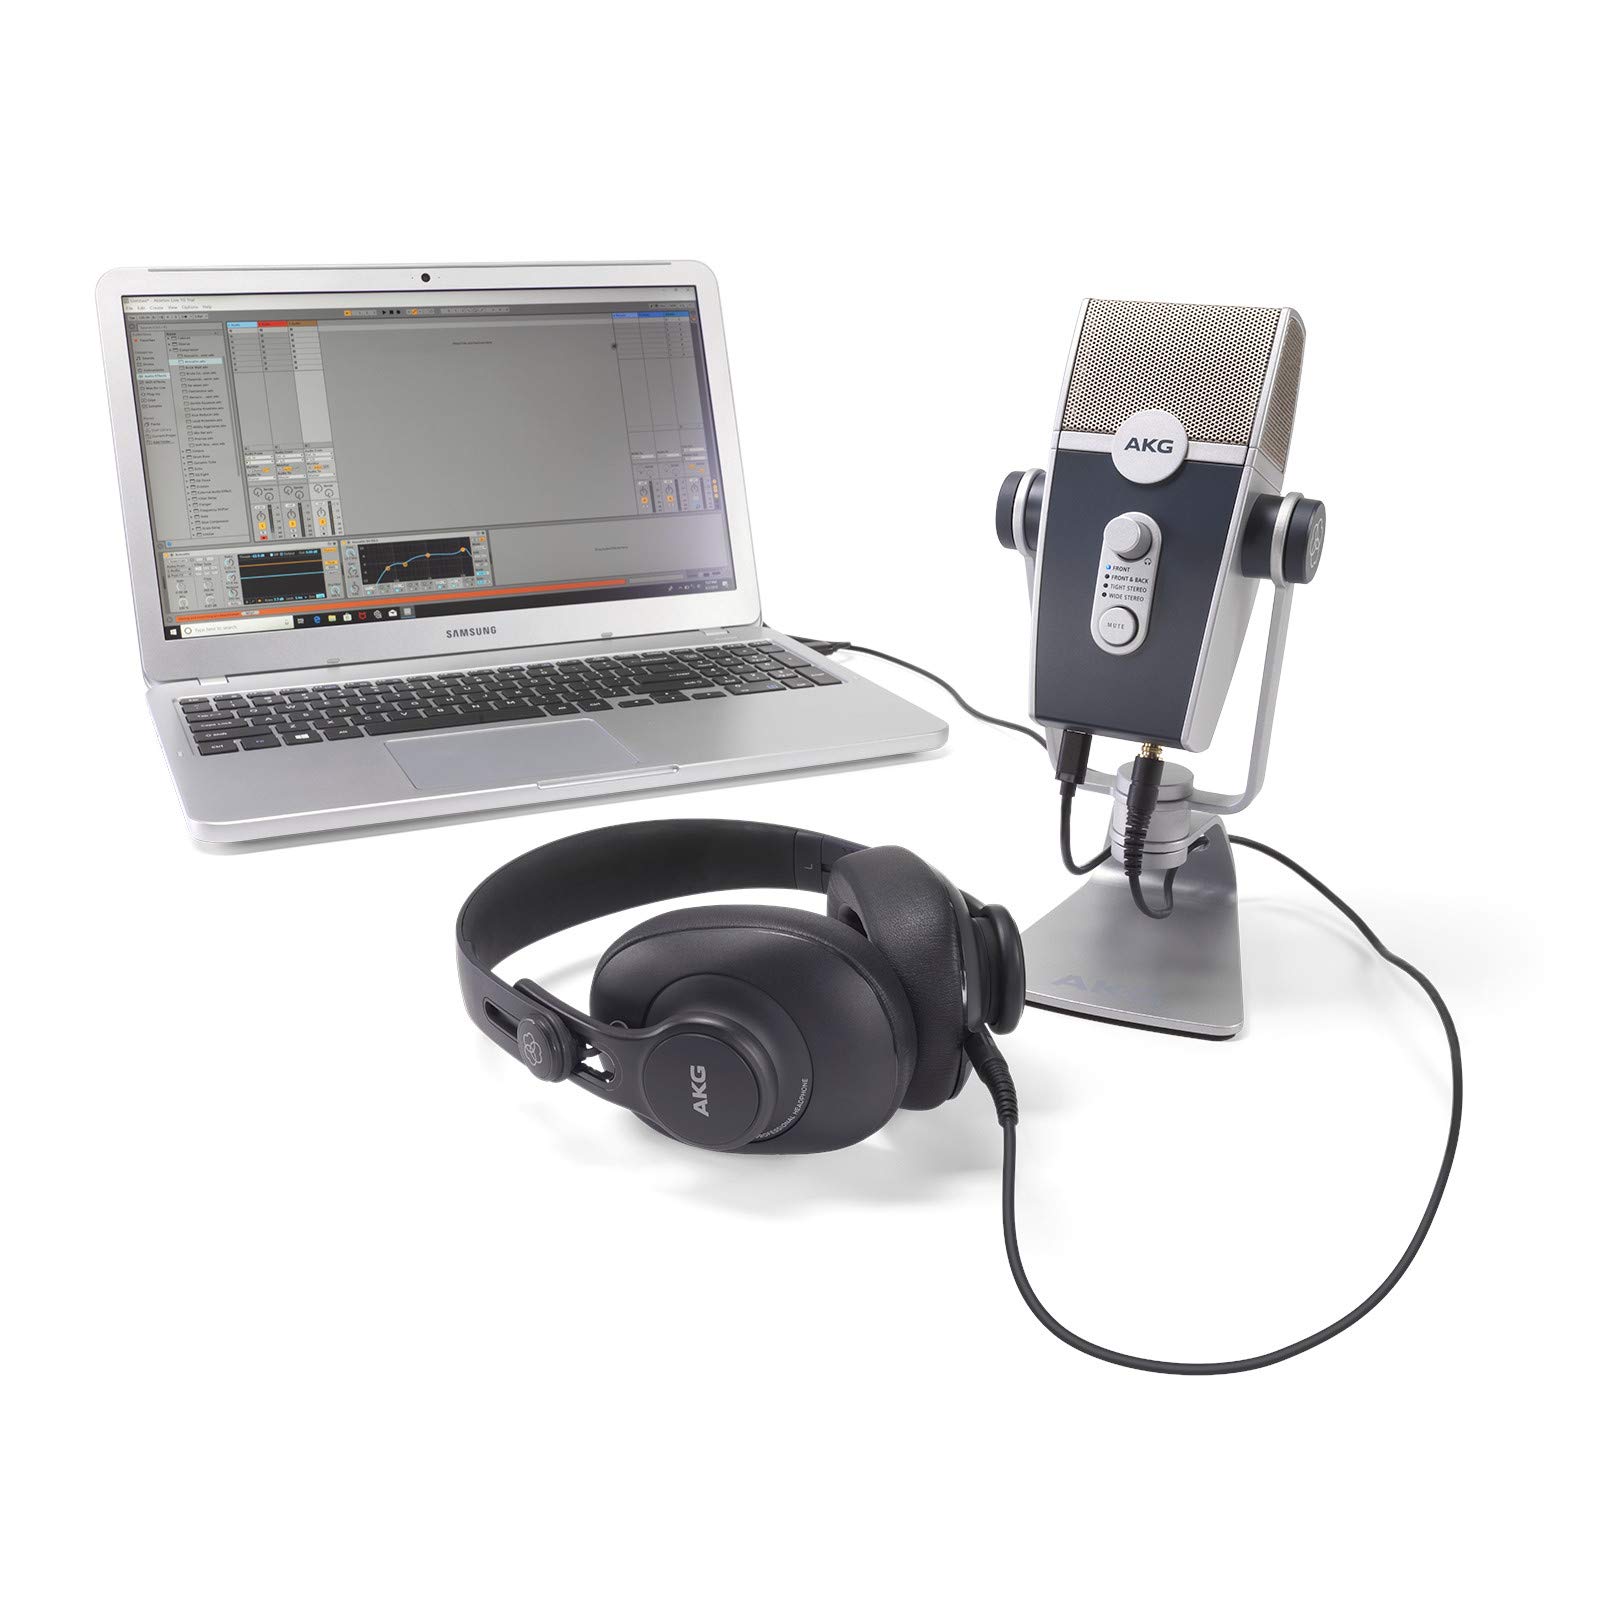 AKG Pro Audio 适用于主播、视频博主和游戏玩家的专业音频播客必备套件 - 包括 Lyra USB-C 麦克风、K371 耳机和 Ableton Lite 软件